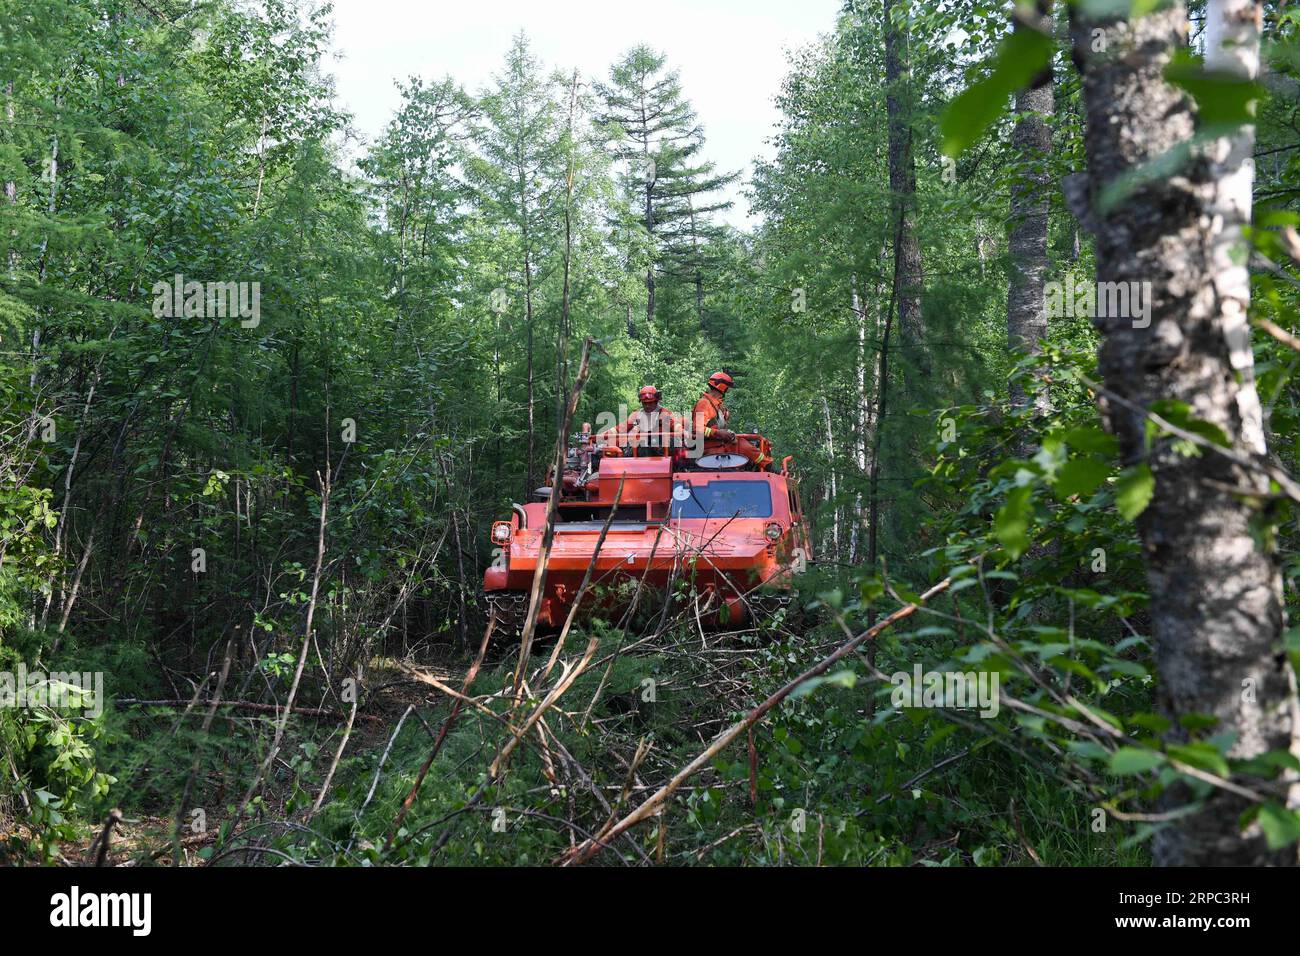 (190622) -- GENHE, 22 juin 2019 (Xinhua) -- les pompiers transportent des fournitures pour leurs collègues sur un site d'incendie à la ferme forestière de Xiushan, dans les montagnes du Grand Hinggan, dans la région autonome de Mongolie intérieure du nord de la Chine, 22 juin 2019. Un incendie de forêt qui a fait rage pendant trois jours dans la région autonome de Mongolie intérieure du nord de la Chine a été maîtrisé, ont déclaré samedi les autorités locales. L’opération de nettoyage est en cours à Xiushan, selon le quartier général des pompiers. Après un énorme effort de plus de 5 000 pompiers, le feu a été maîtrisé sur tous les fronts à 4:40 h samedi. (Xinhua/Liu Lei) Banque D'Images